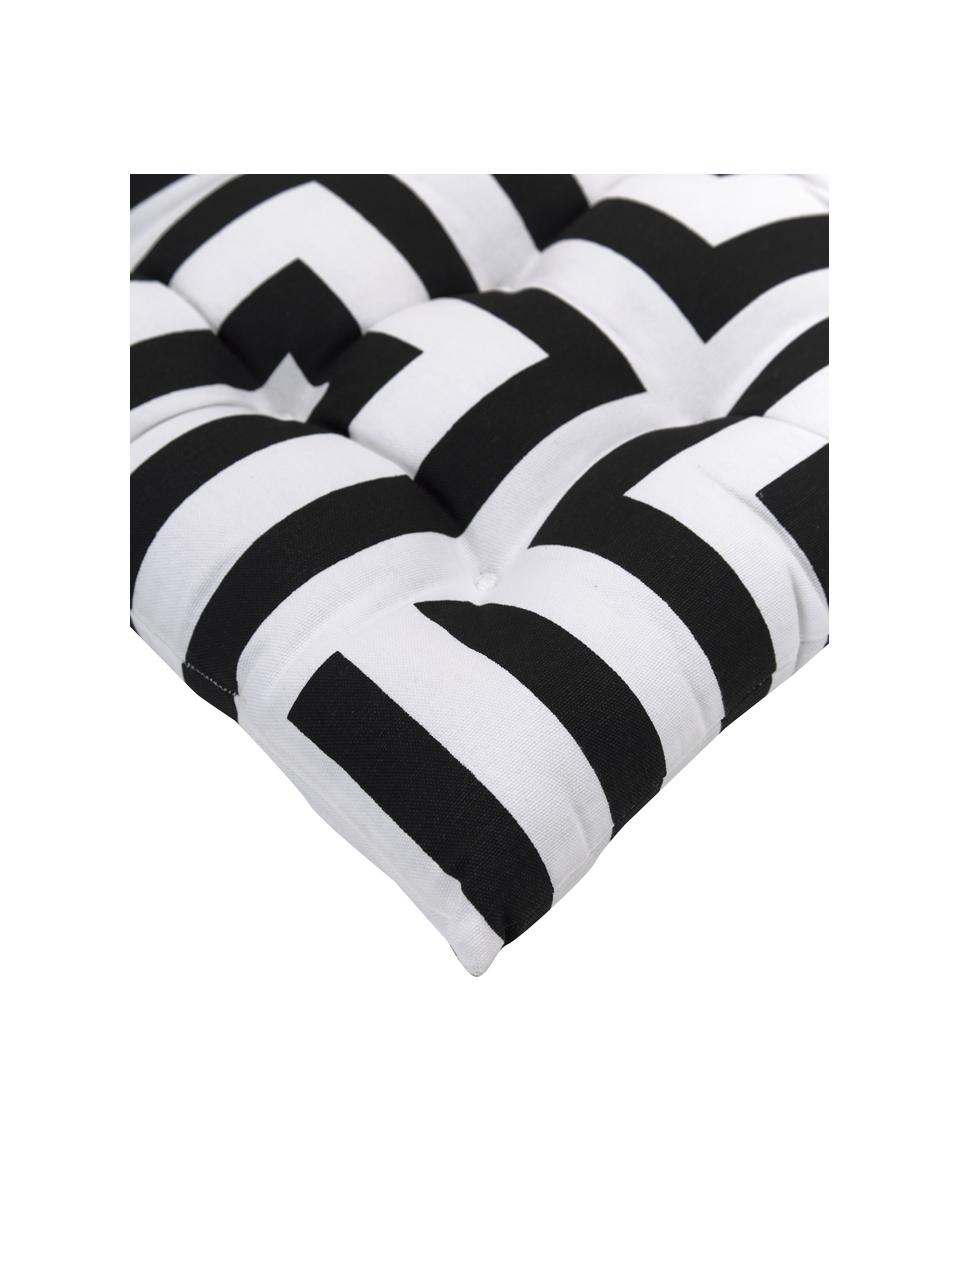 Baumwoll-Sitzkissen Bram mit grafischem Muster, Bezug: 100% Baumwolle, Schwarz, Weiss, B 40 x L 40 cm